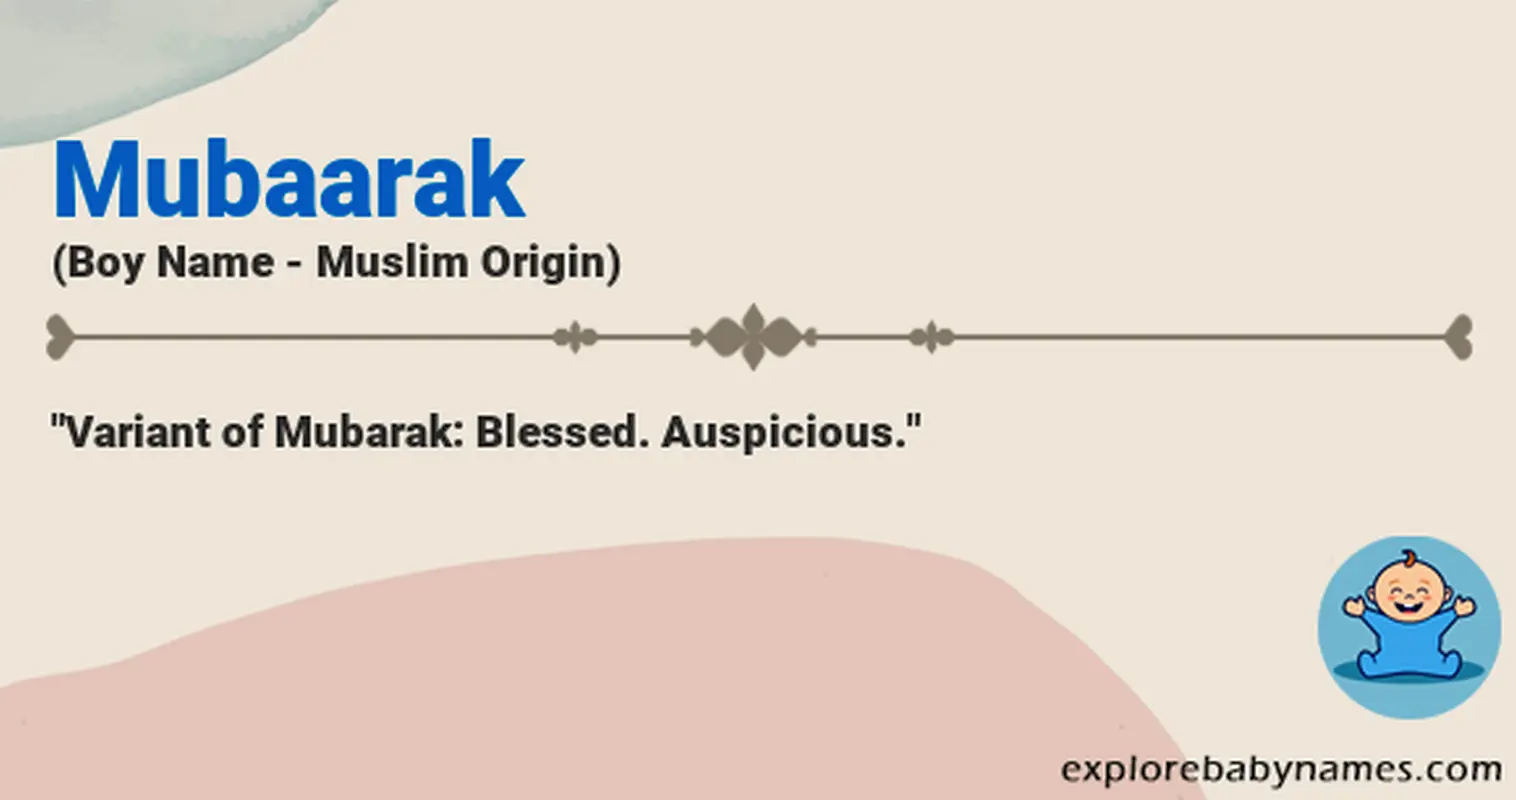 Meaning of Mubaarak